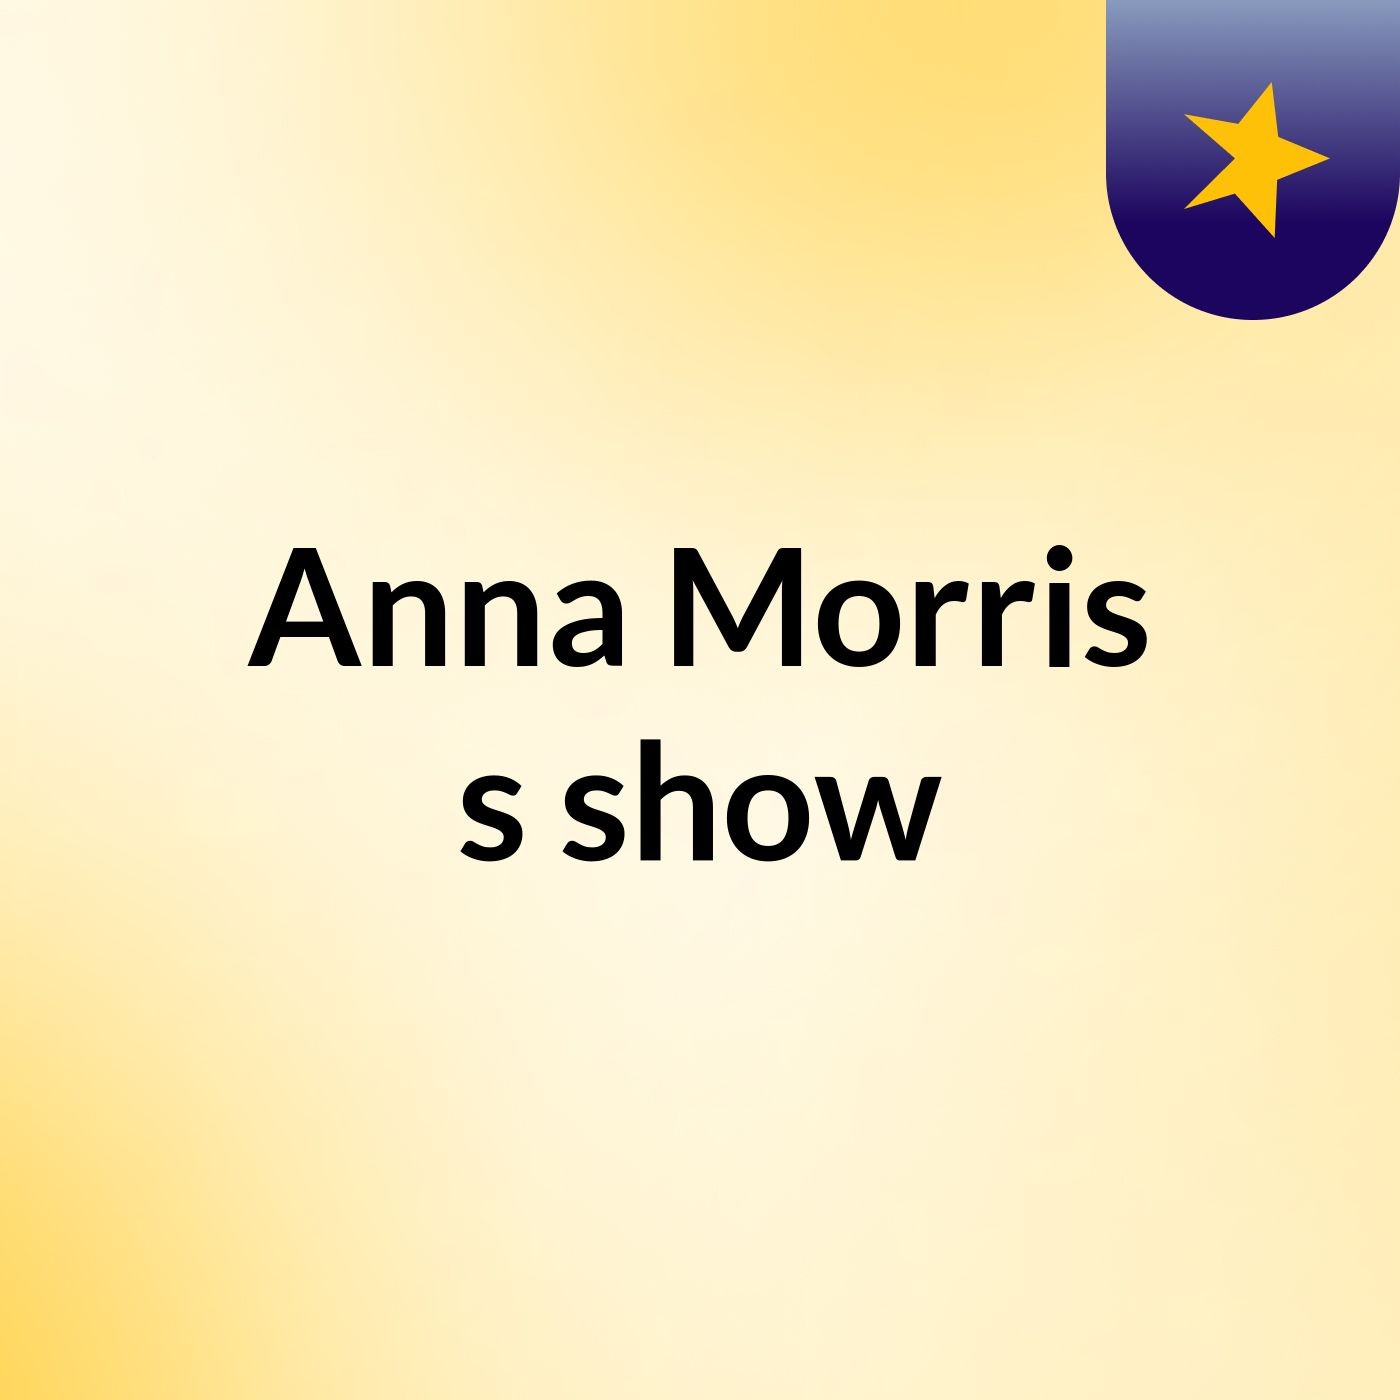 Anna Morris's show